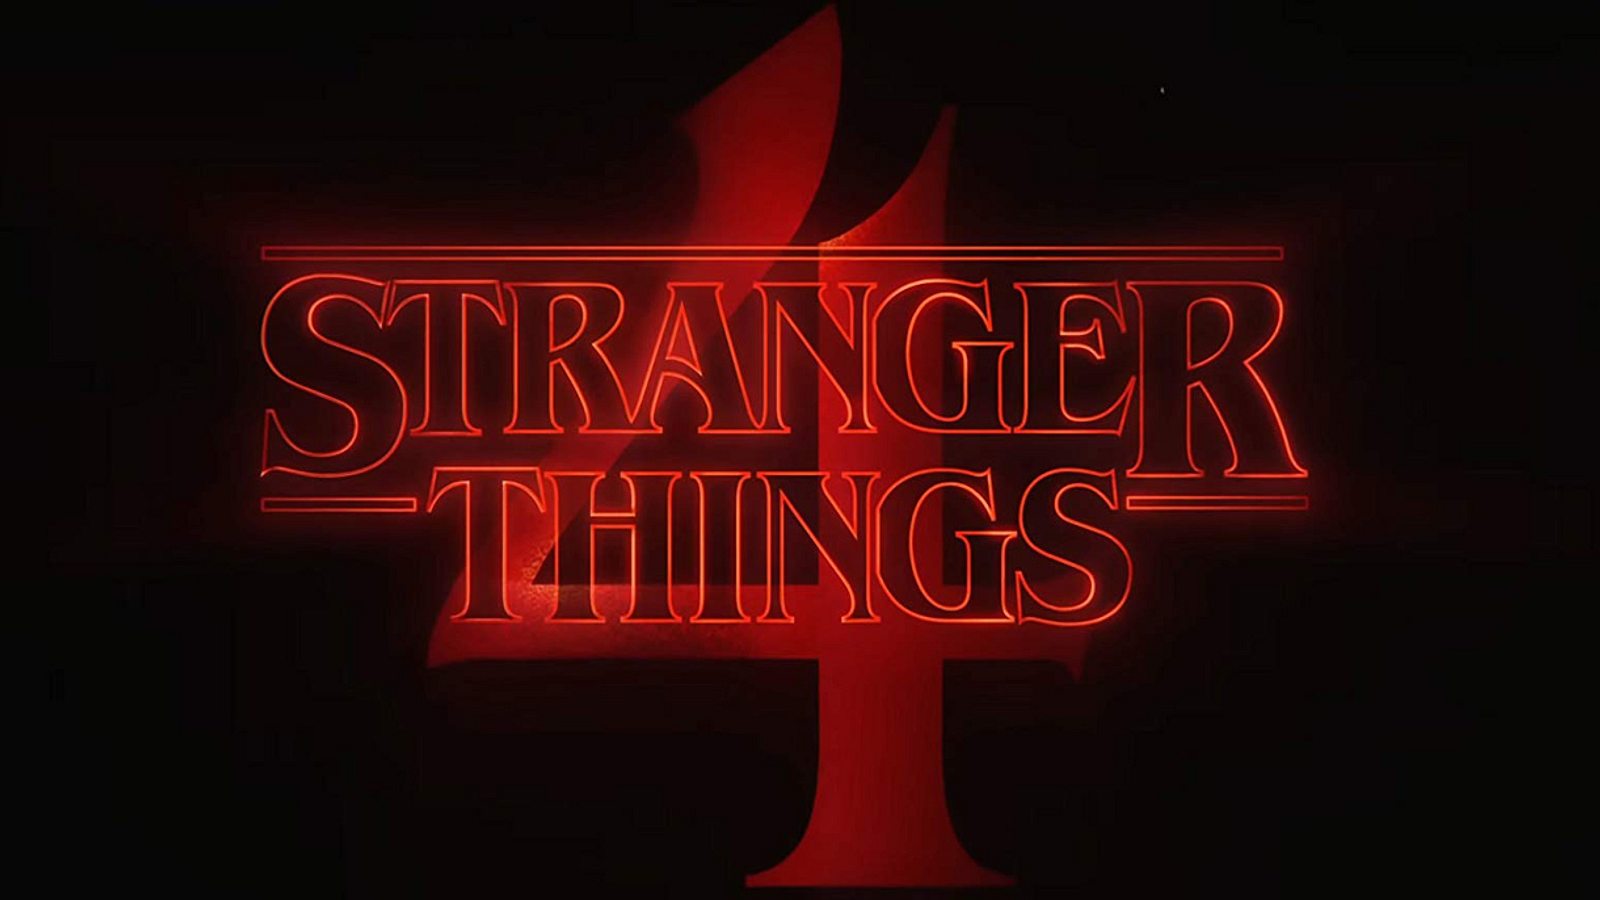 Stranger Things Alle Infos Zur 4 Staffel Männersache